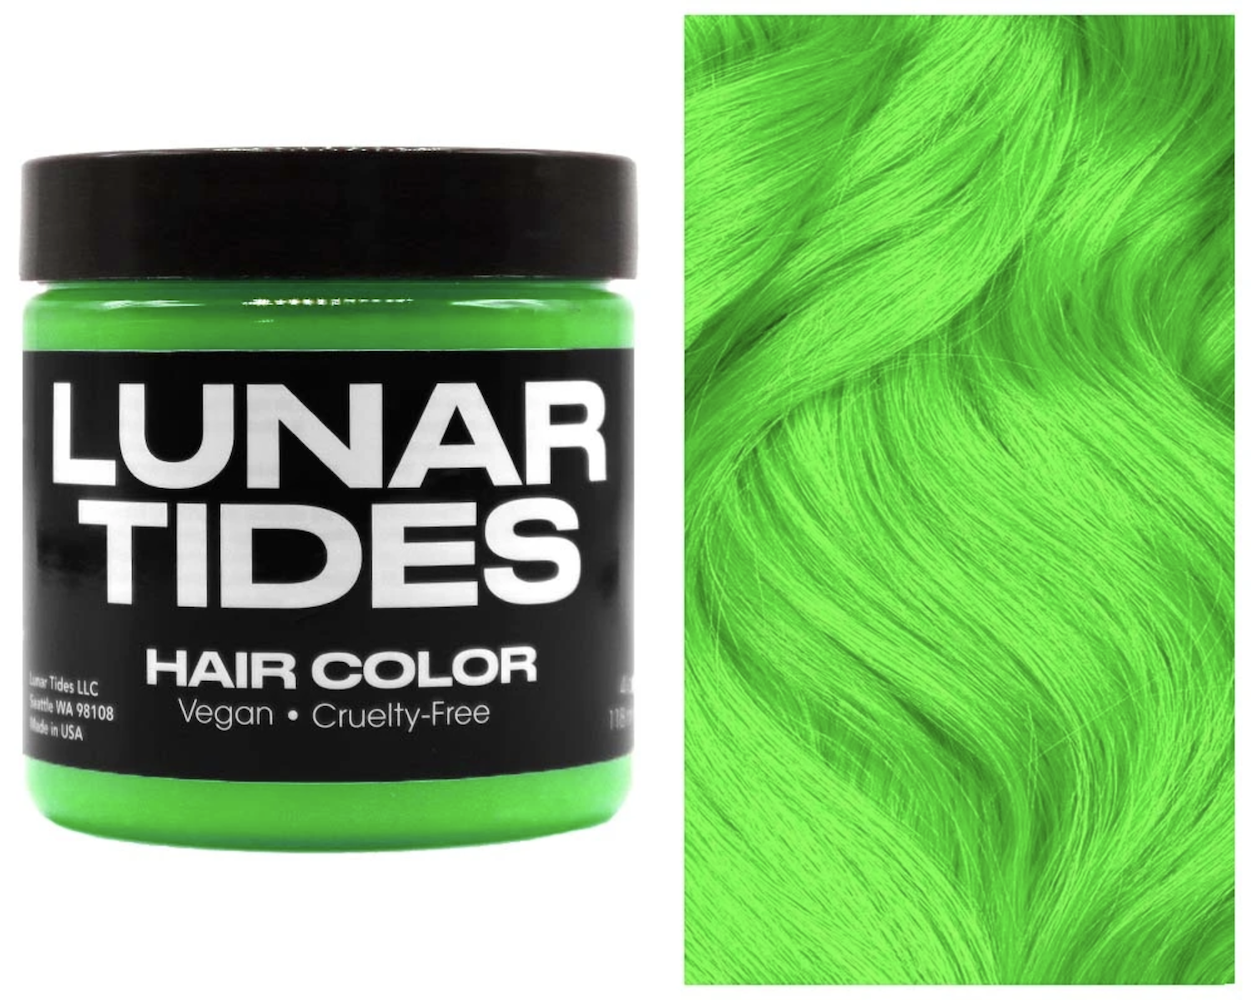 Lunar Tides Hair Dye - Aurora Green